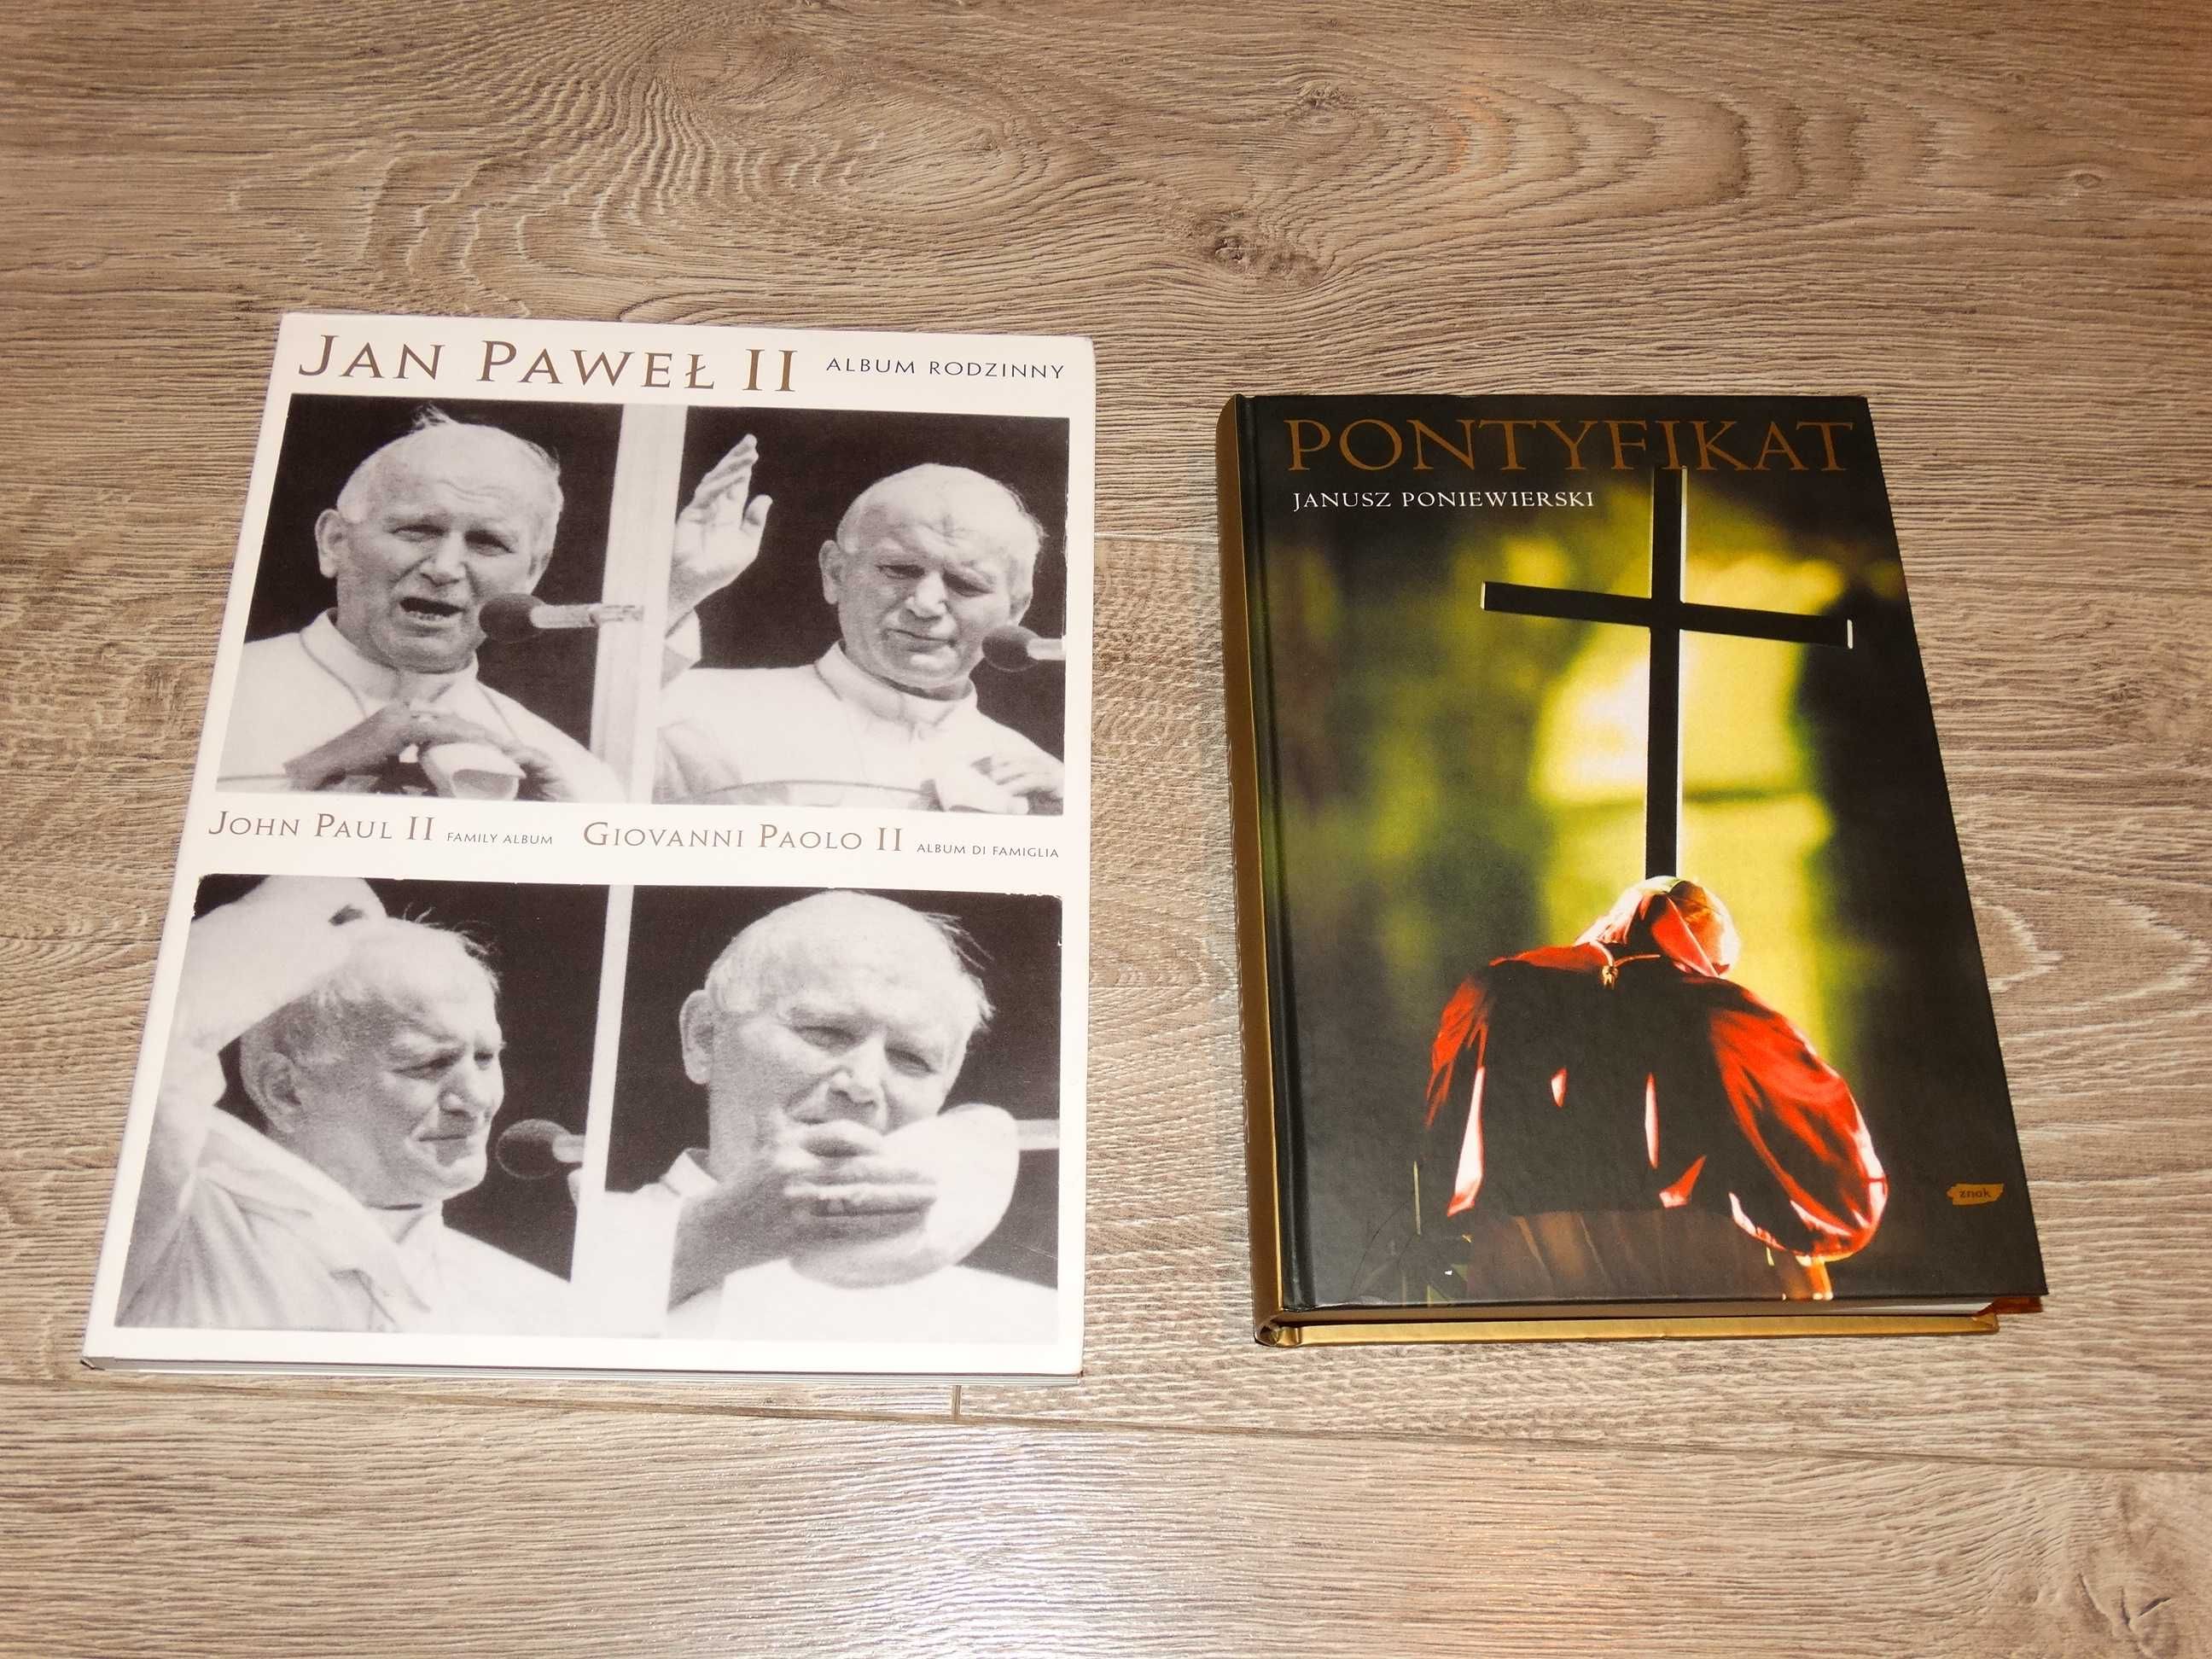 Pontyfikat i Jan Paweł II album rodzinny zestaw 2 pozycji